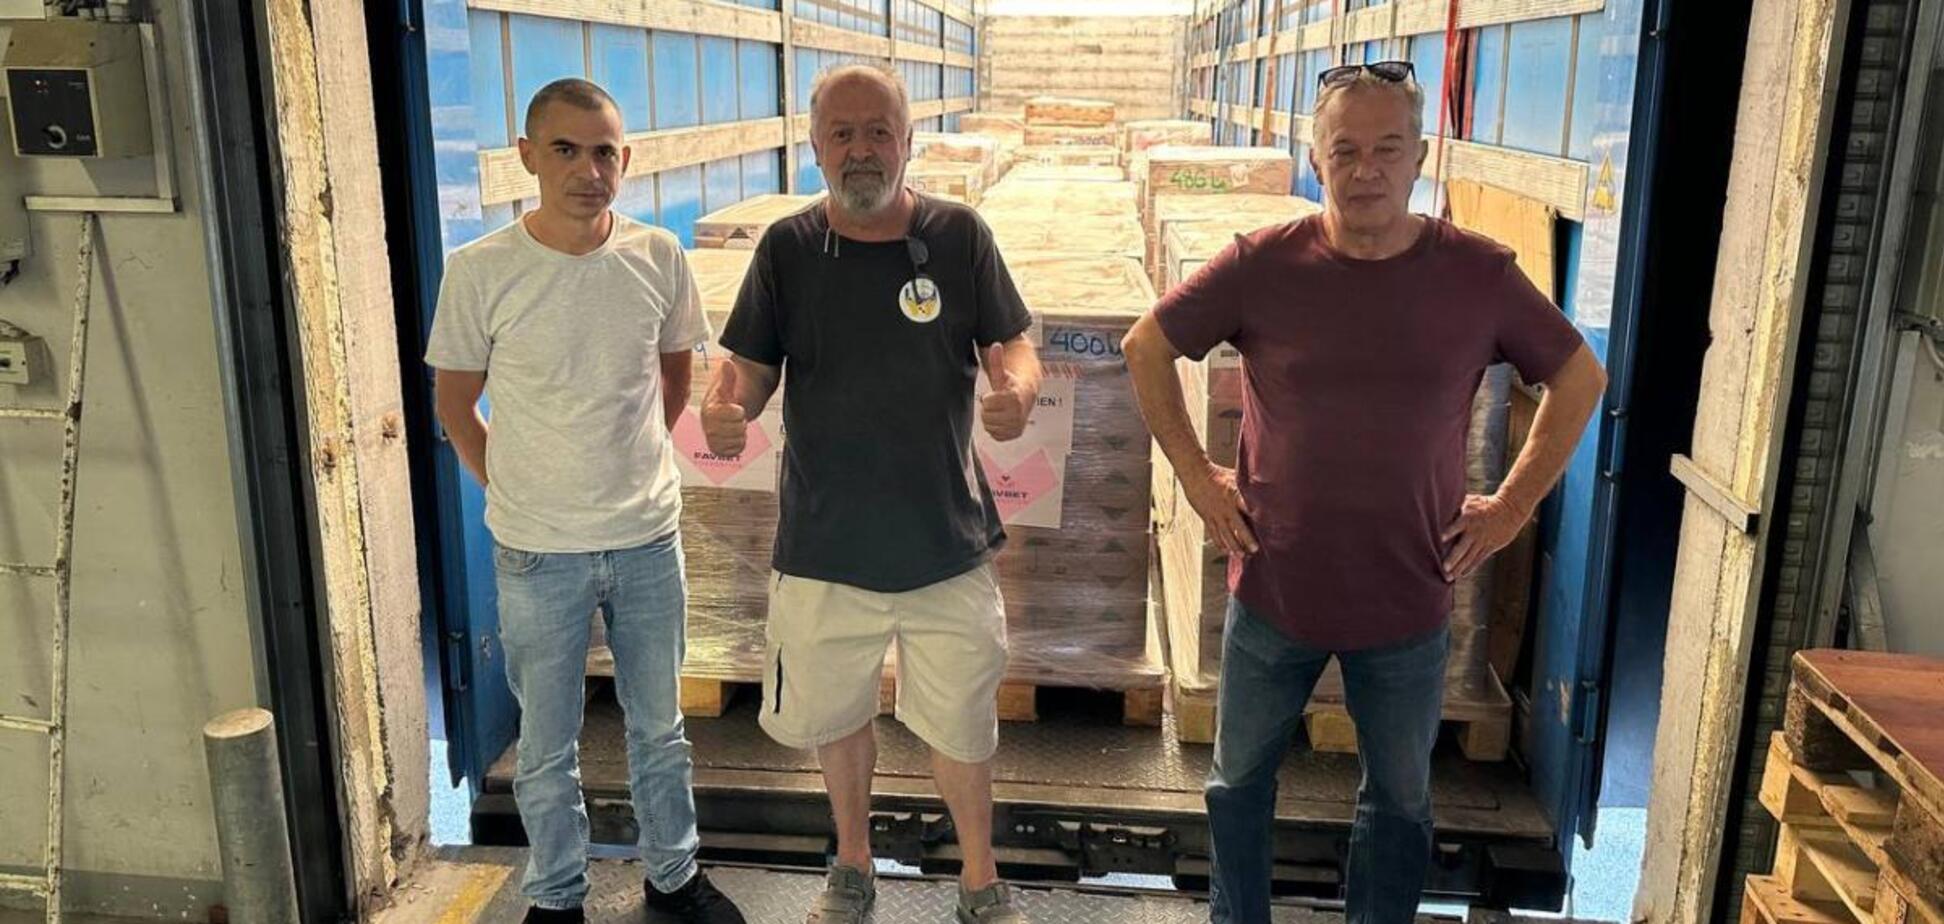 Продукти, одяг і не тільки: в Україну доставлено партію гумдопомоги з Хорватії за підтримки Favbet Foundation